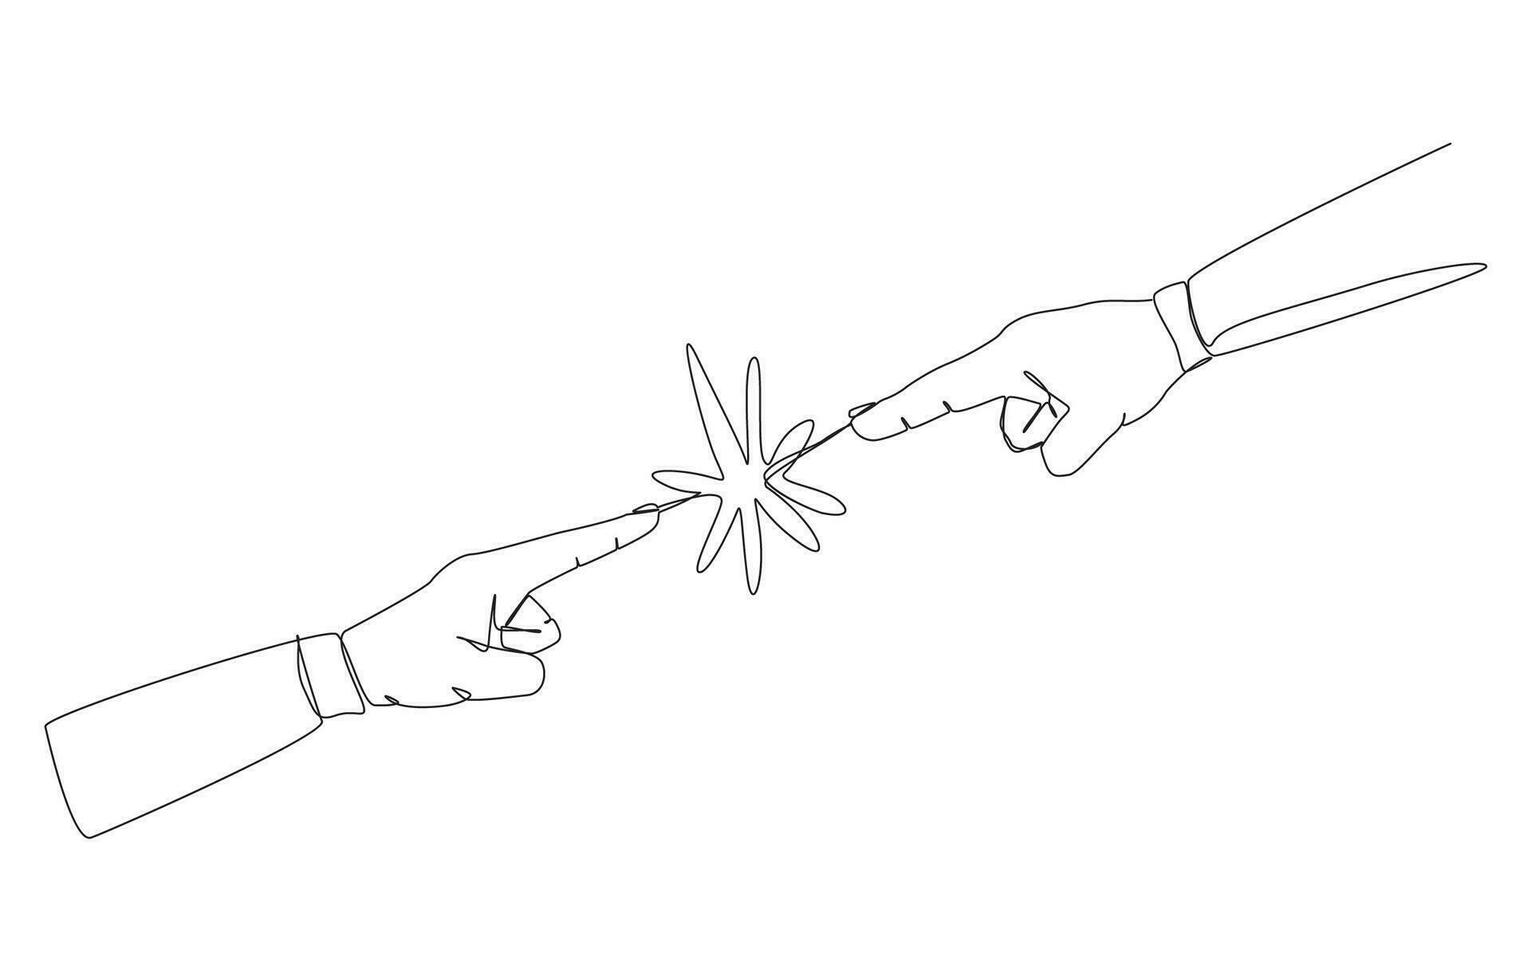 contínuo 1 linha desenhando do dois mãos apontando às cada outro, o negócio conflito, disputa entre funcionários, diferente pensamento conceito, solteiro linha Projeto vetor ilustração.